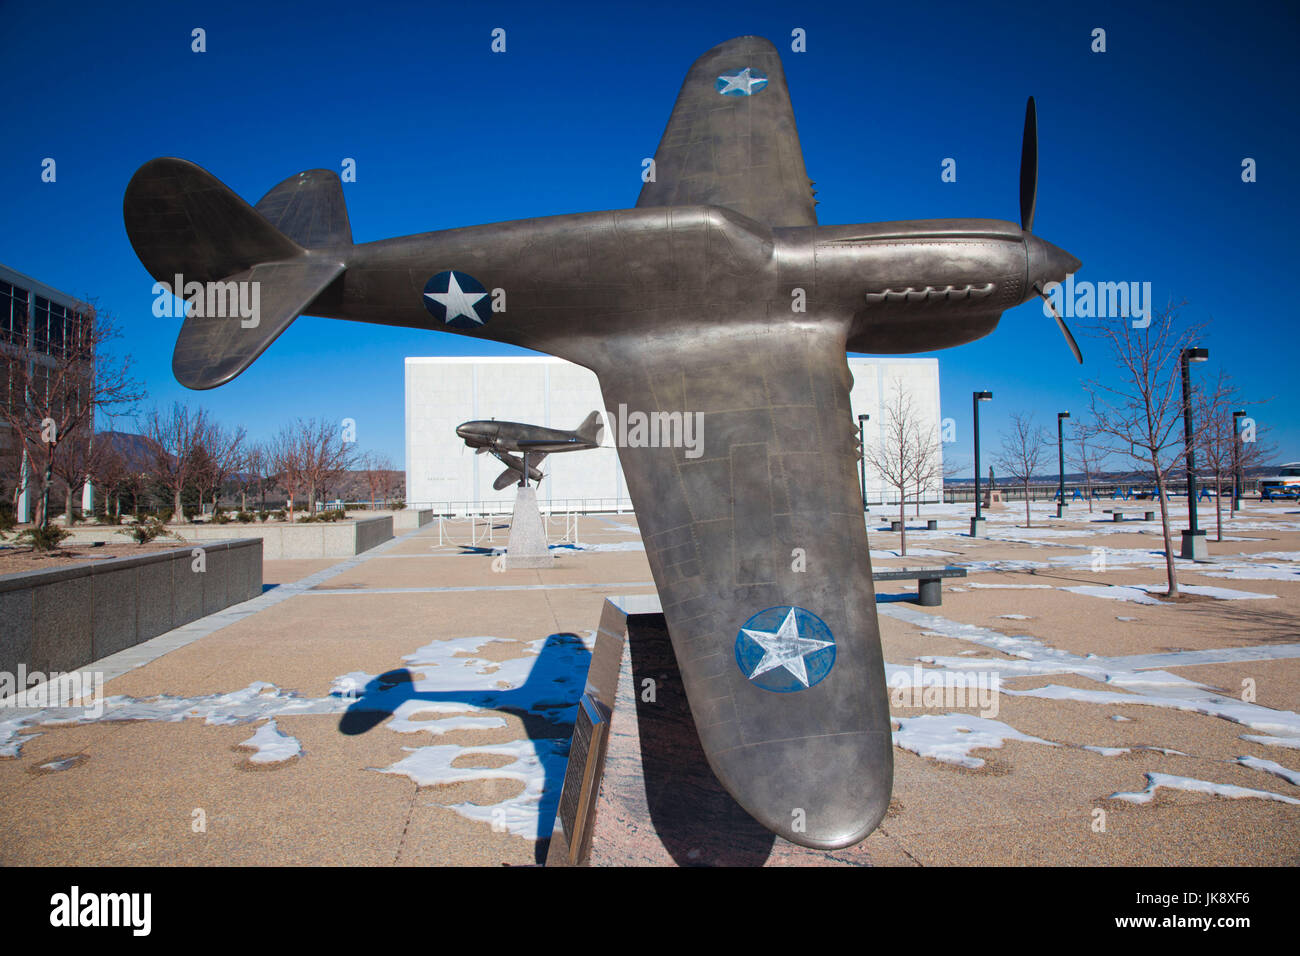 USA, Colorado Springs, Colorado, United States Air Force Academy, la sculpture de la Deuxième Guerre mondiale ère-P-40 Tiger Shark fighter Banque D'Images